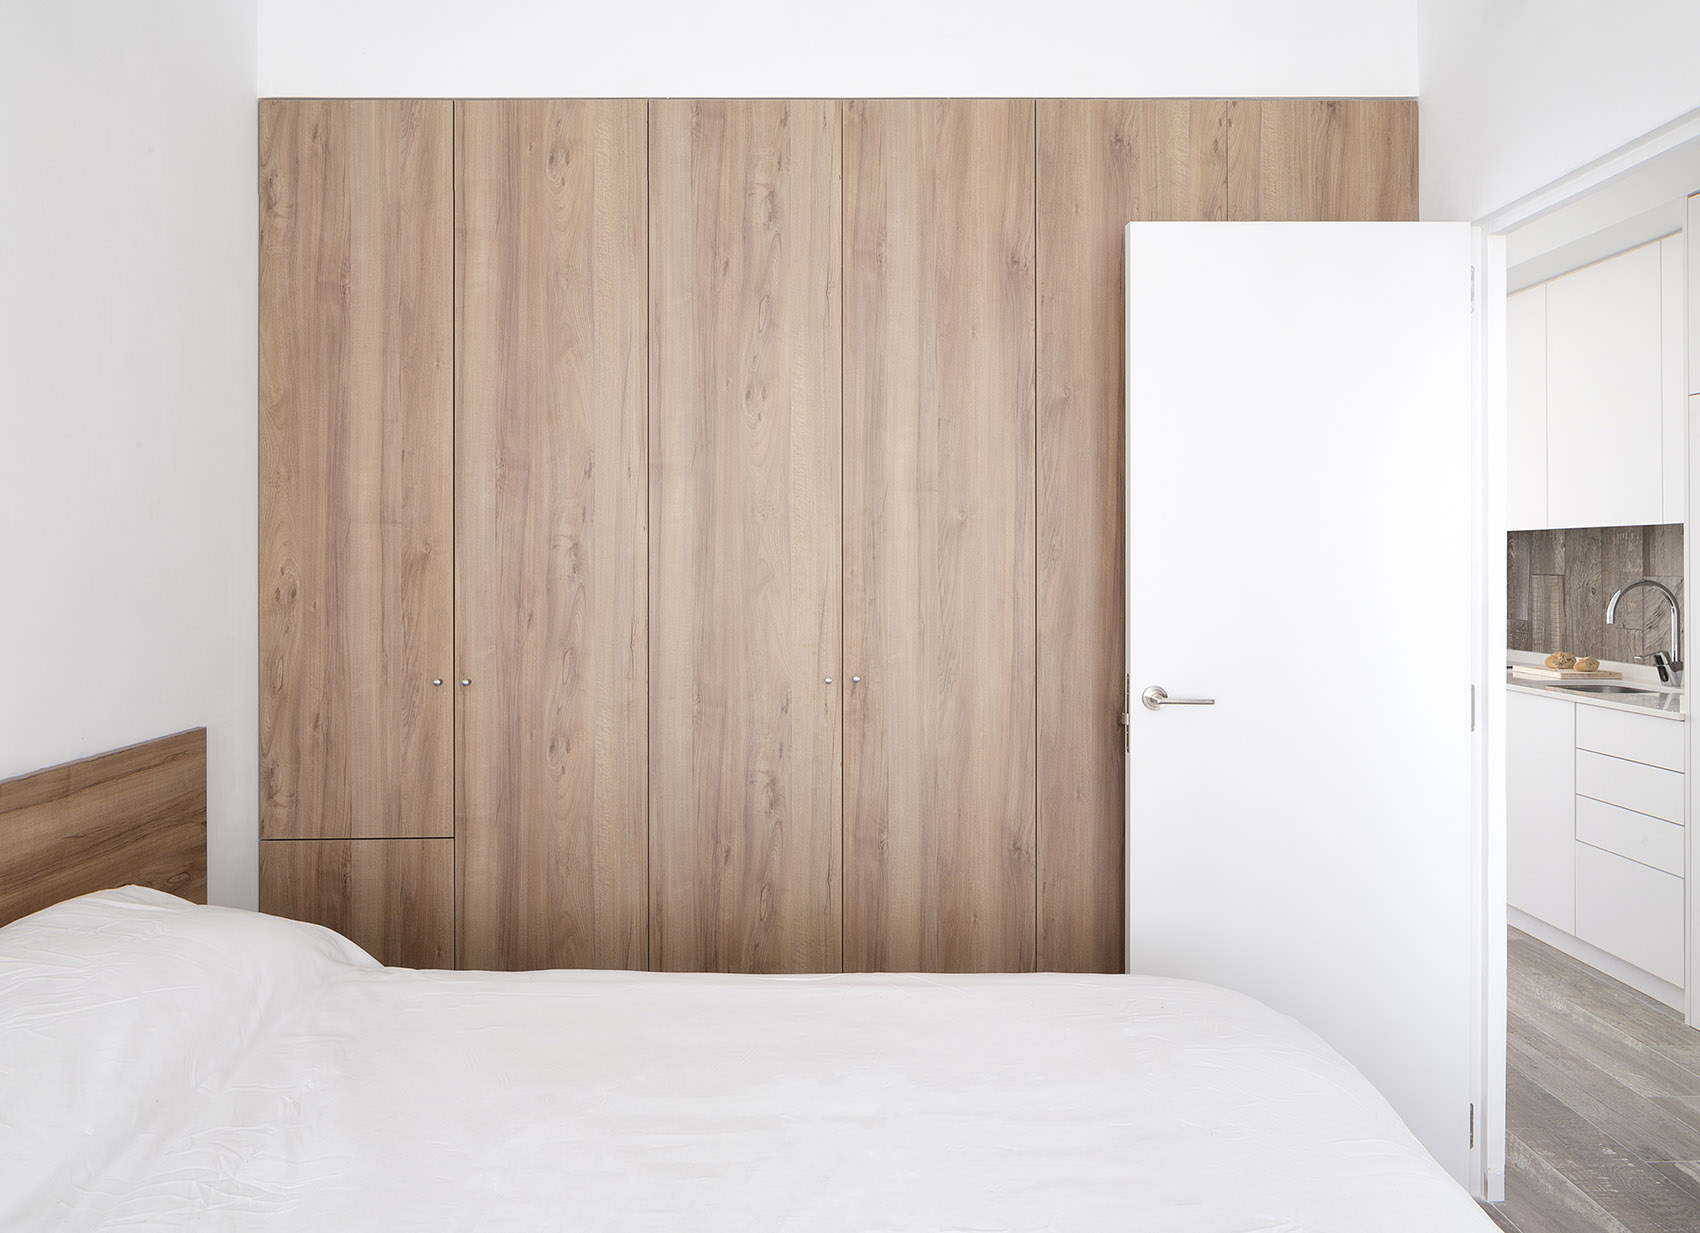 侧卧使用白色和木色为基调，嵌入式木质衣柜的出现，很好的缓解了大面积白色带来的视觉疲劳。